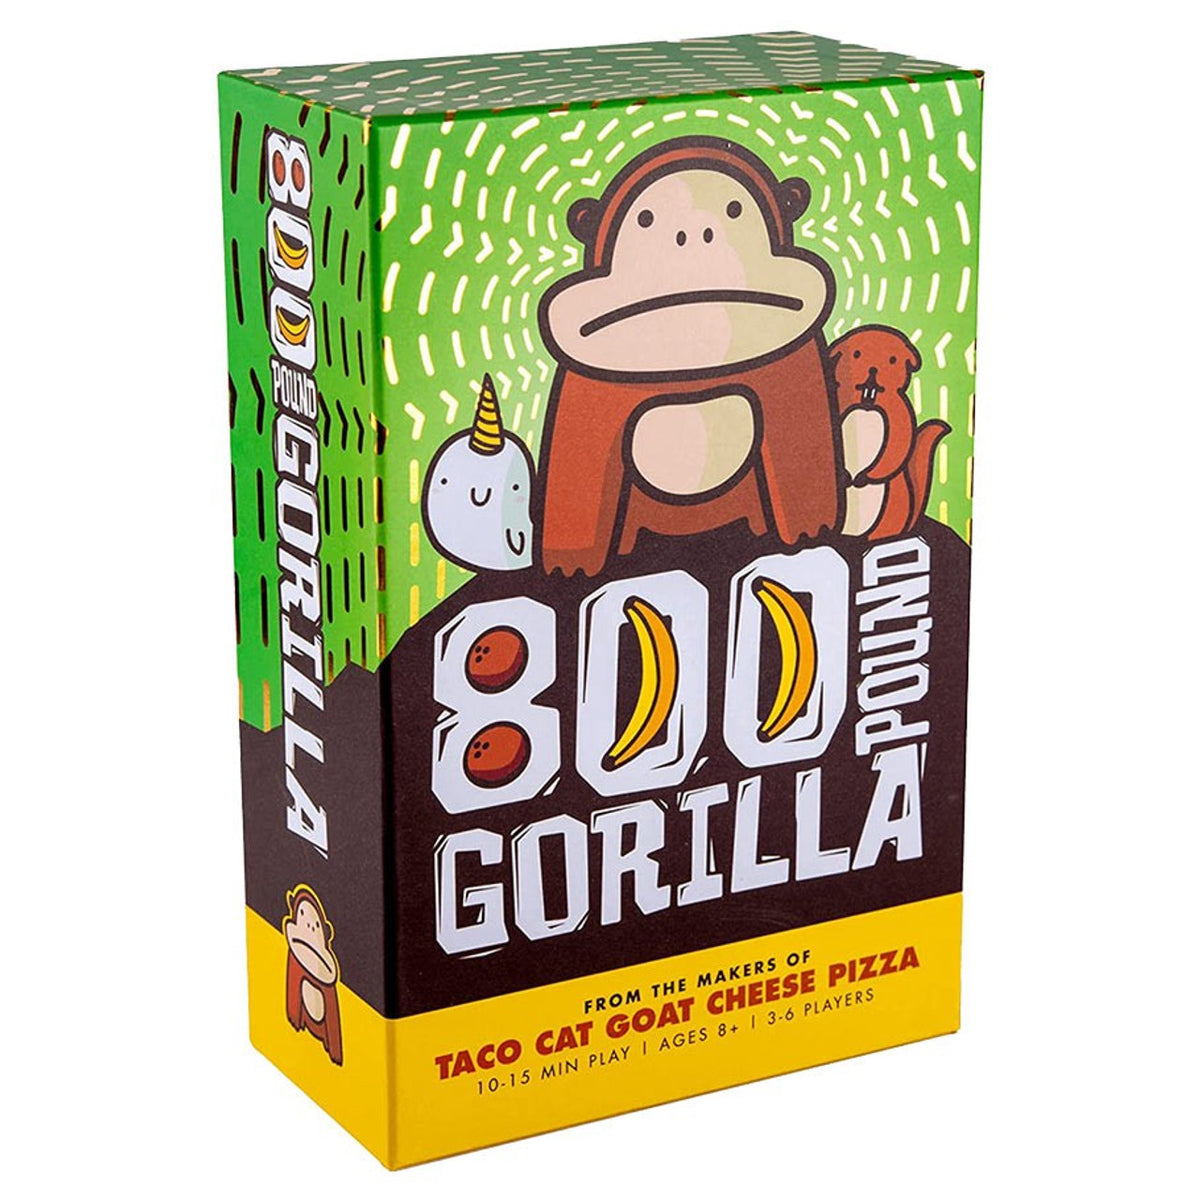 800 pound gorilla 855836006265
